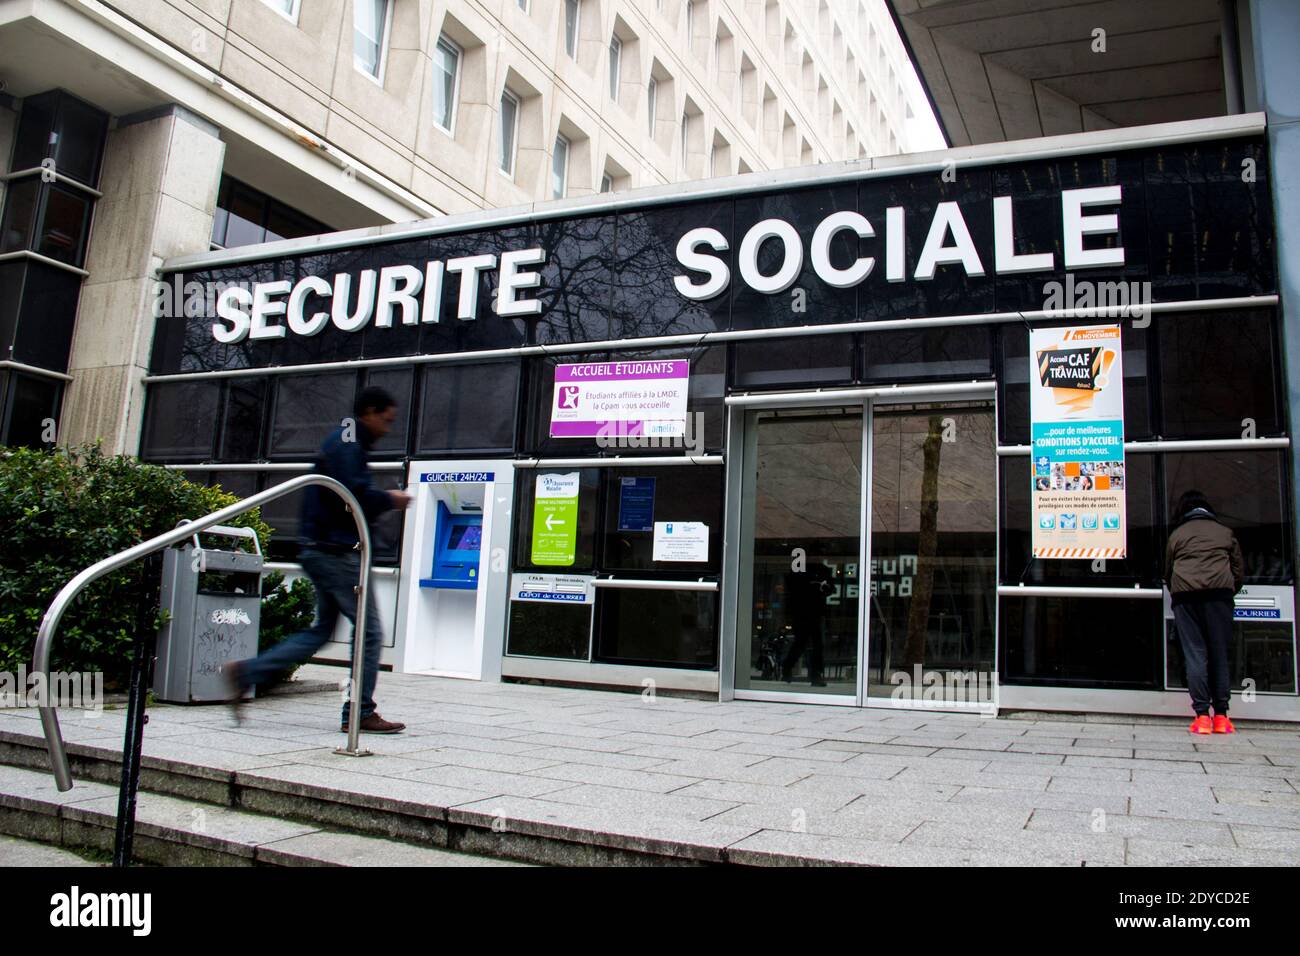 Sécurité sociale hi-res stock photography and images - Alamy